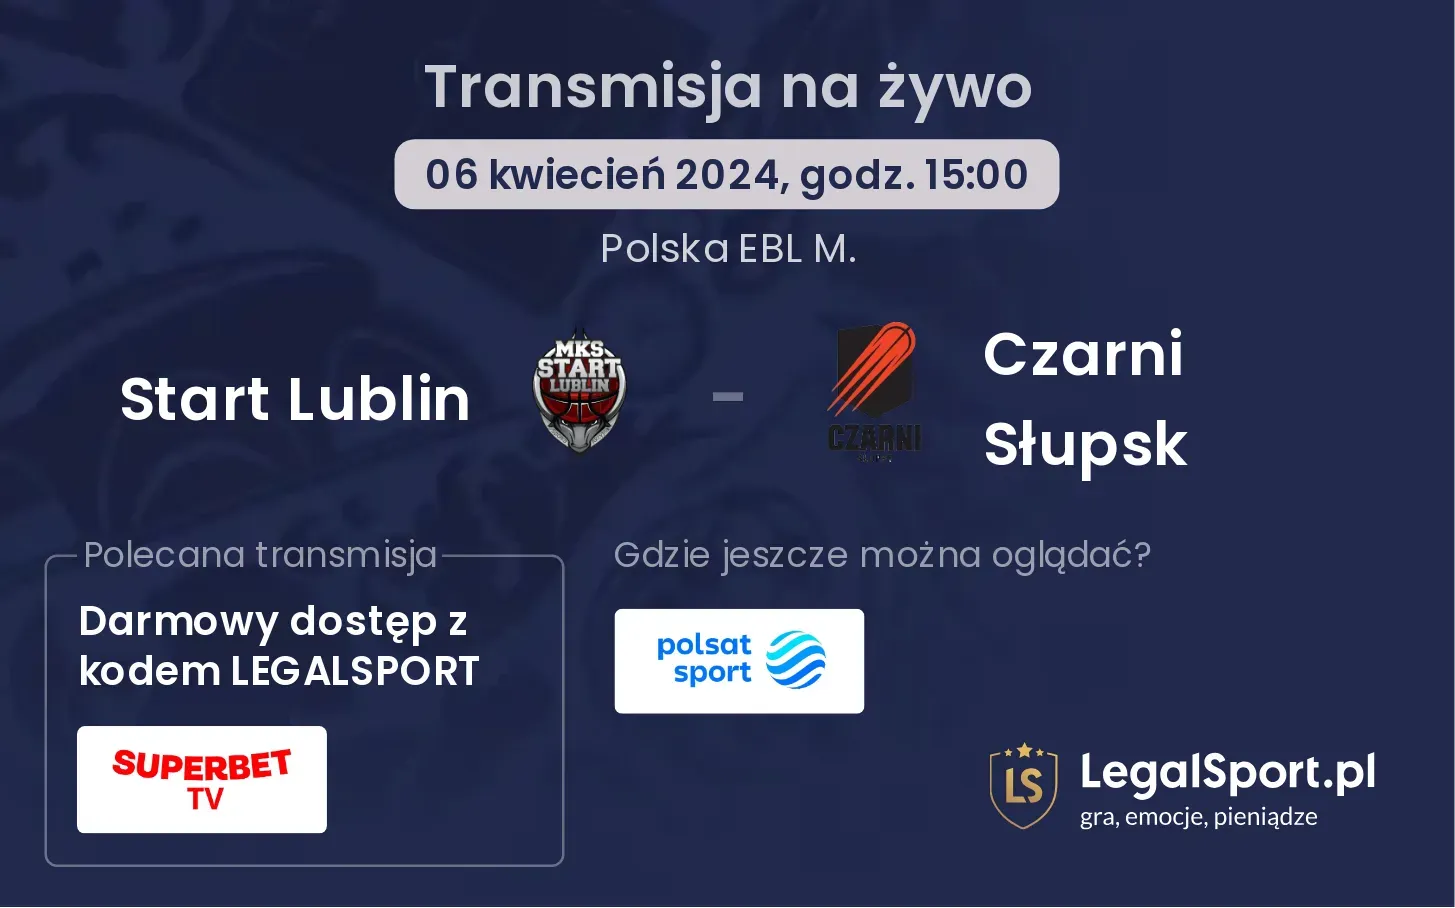 Start Lublin - Czarni Słupsk transmisja na żywo